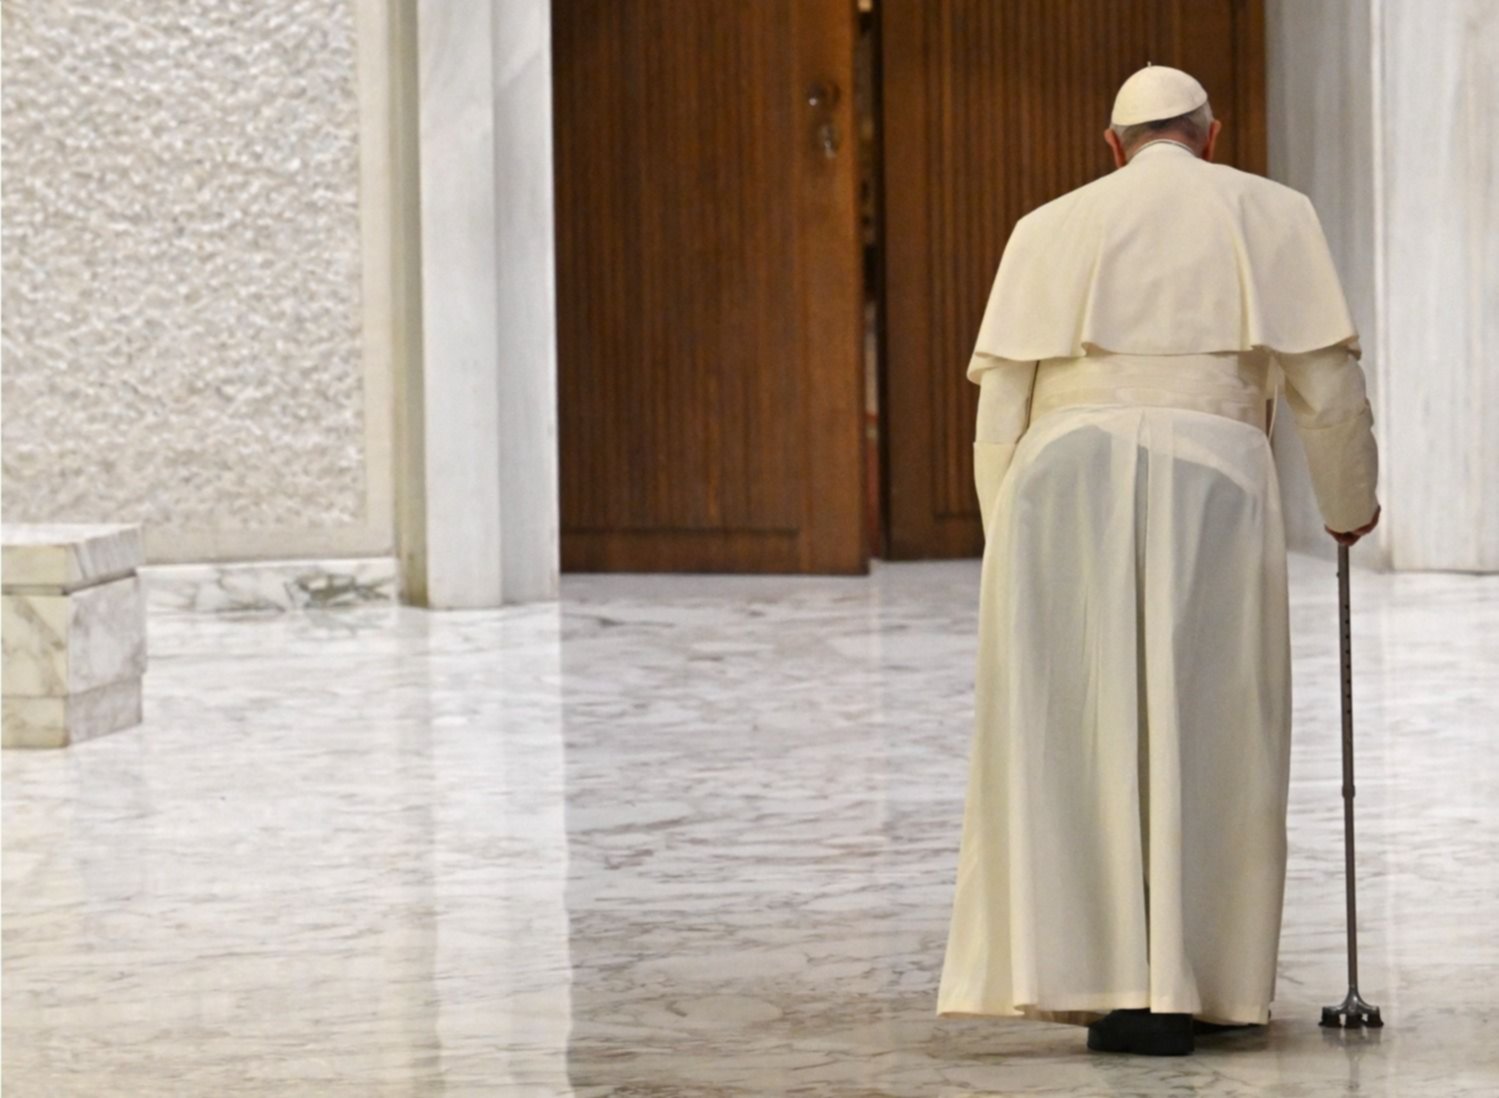 El papa Francisco negó rumores de renuncia